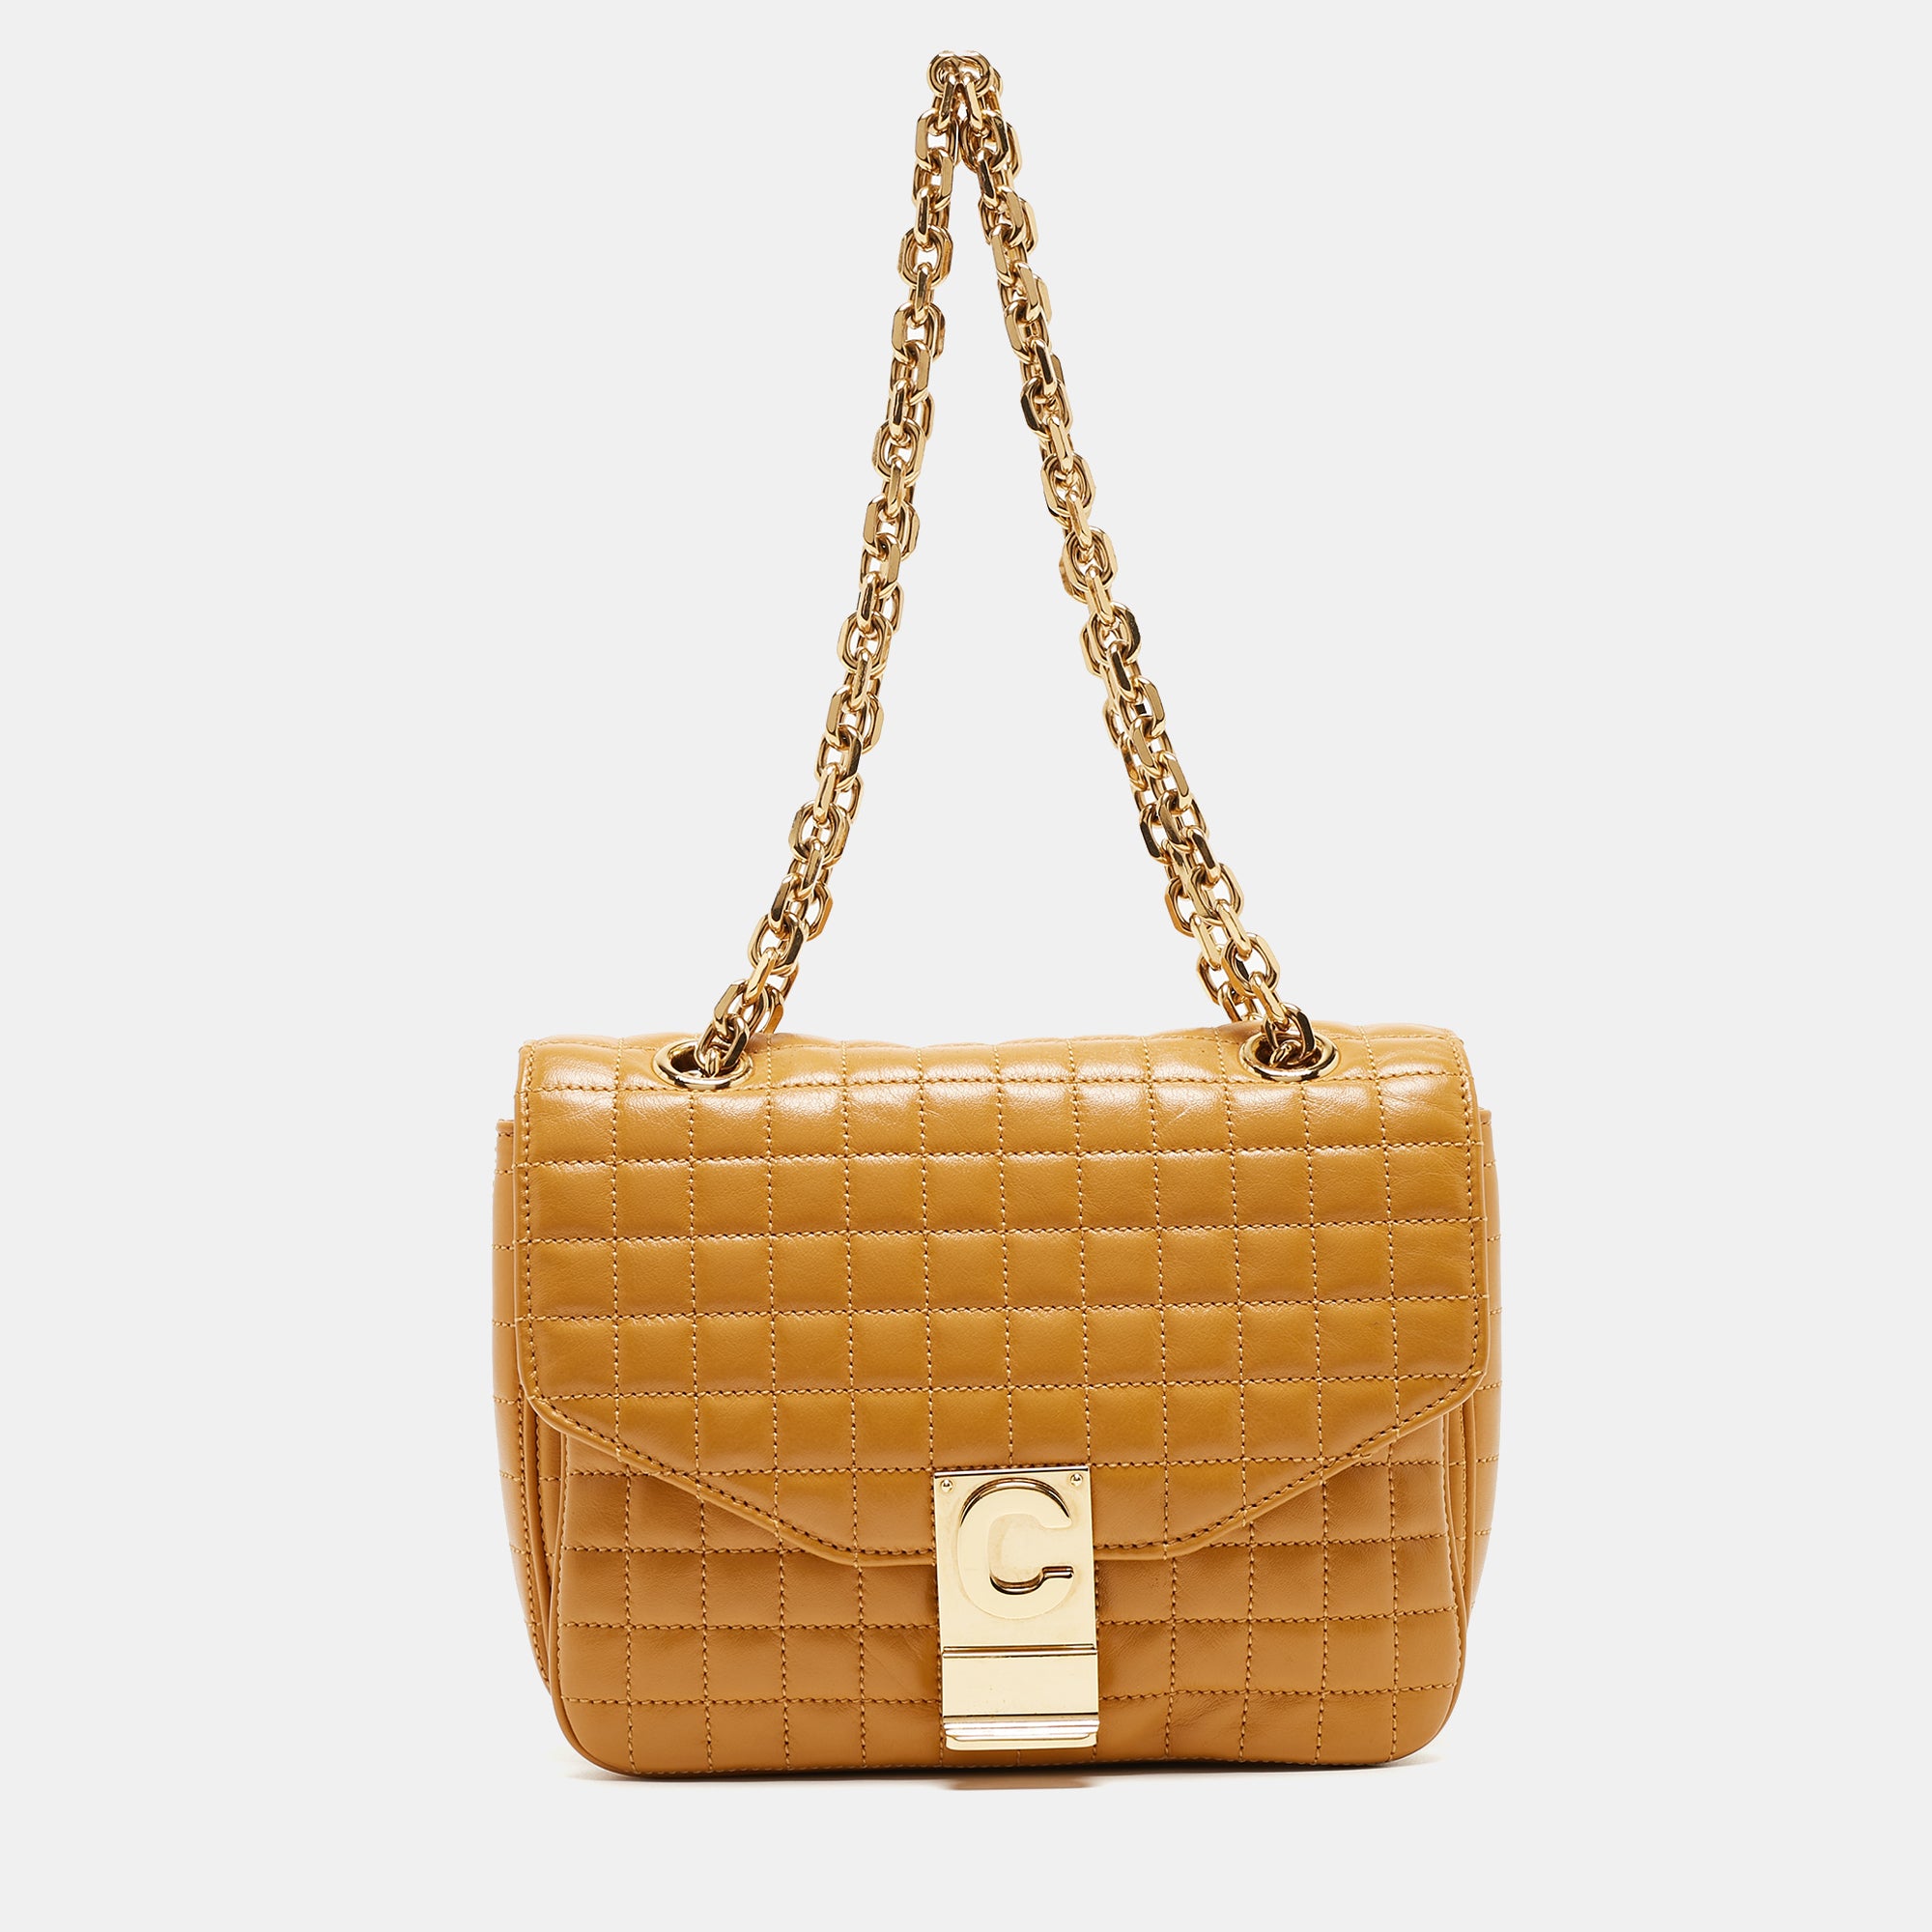 Céline Dion Launches A Handbag Line - The Kit